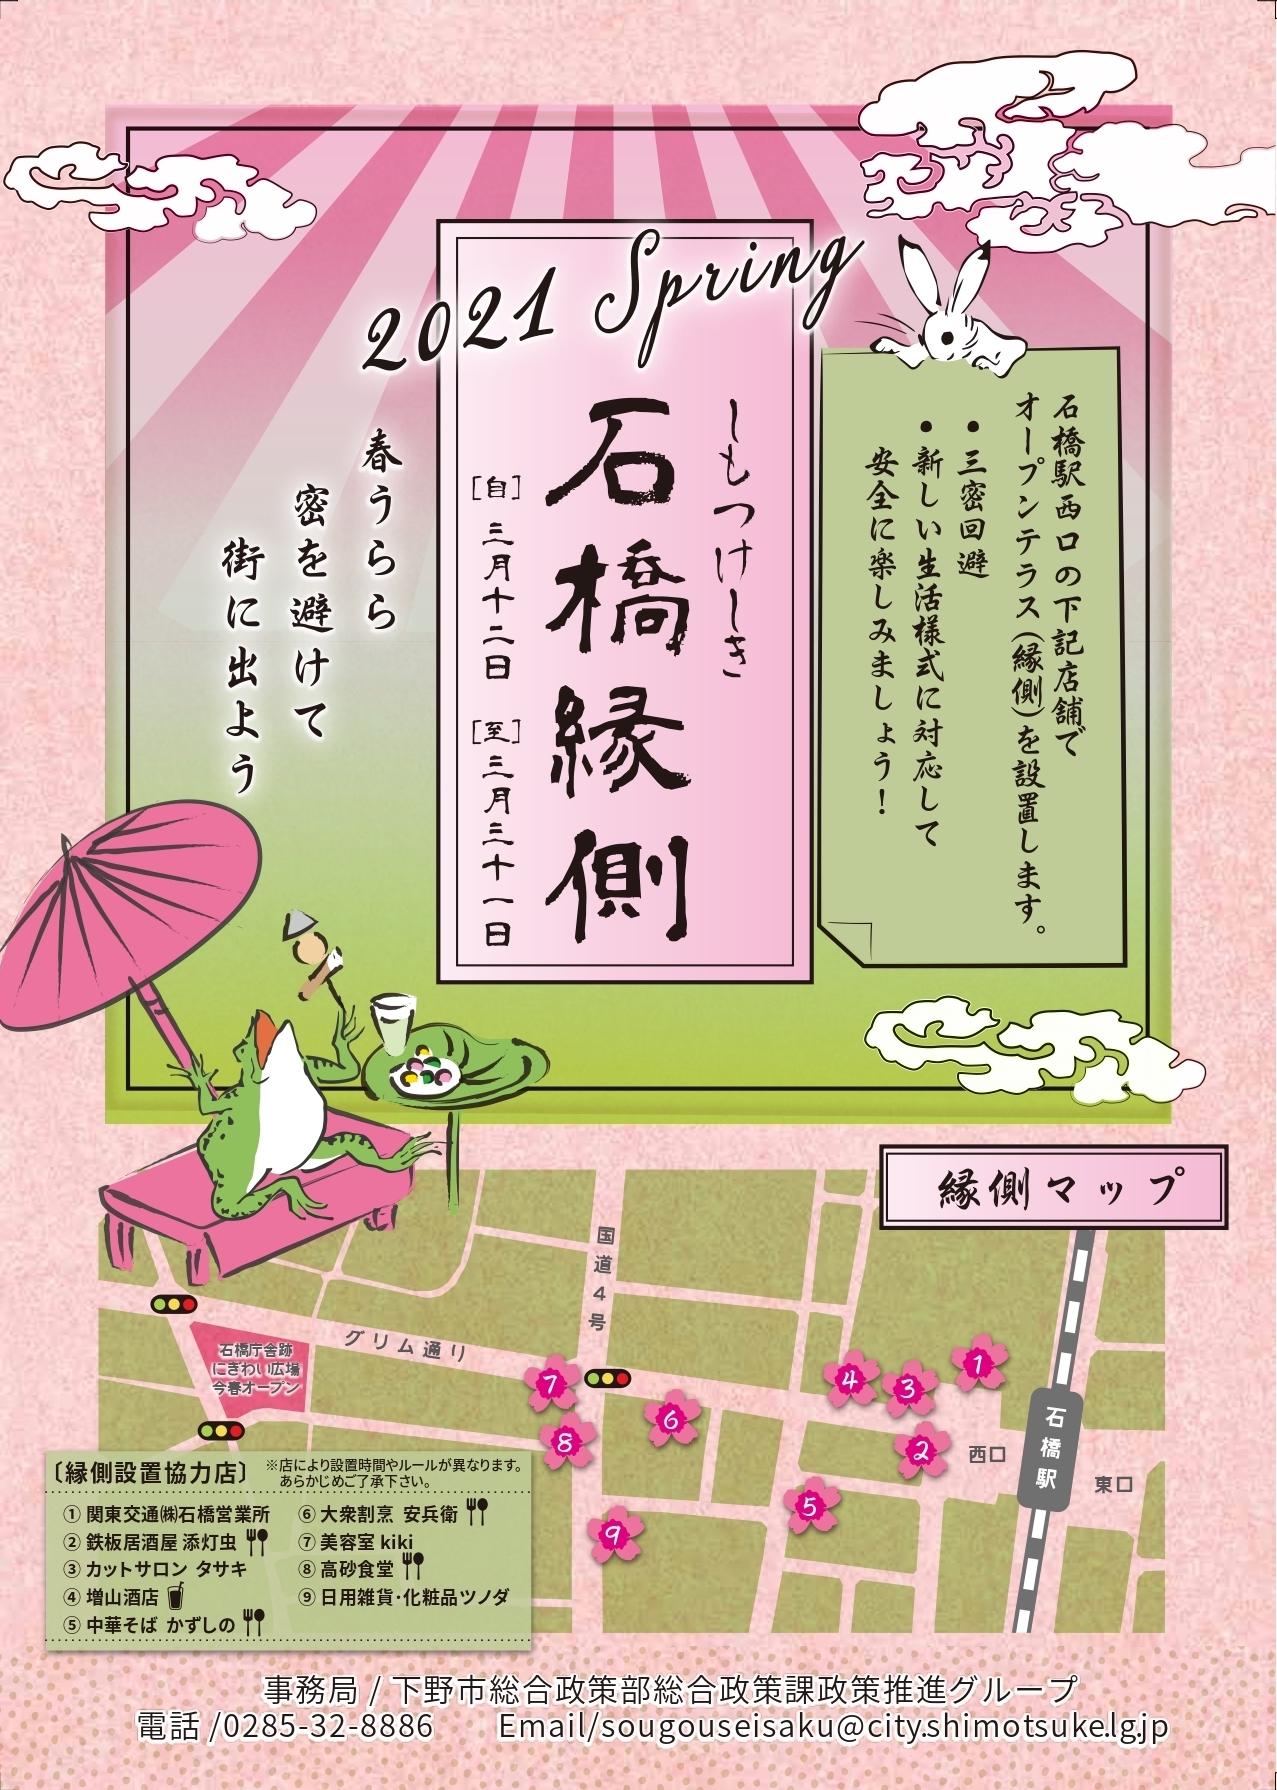 「しもつけしき石橋縁側2021春」のポスター